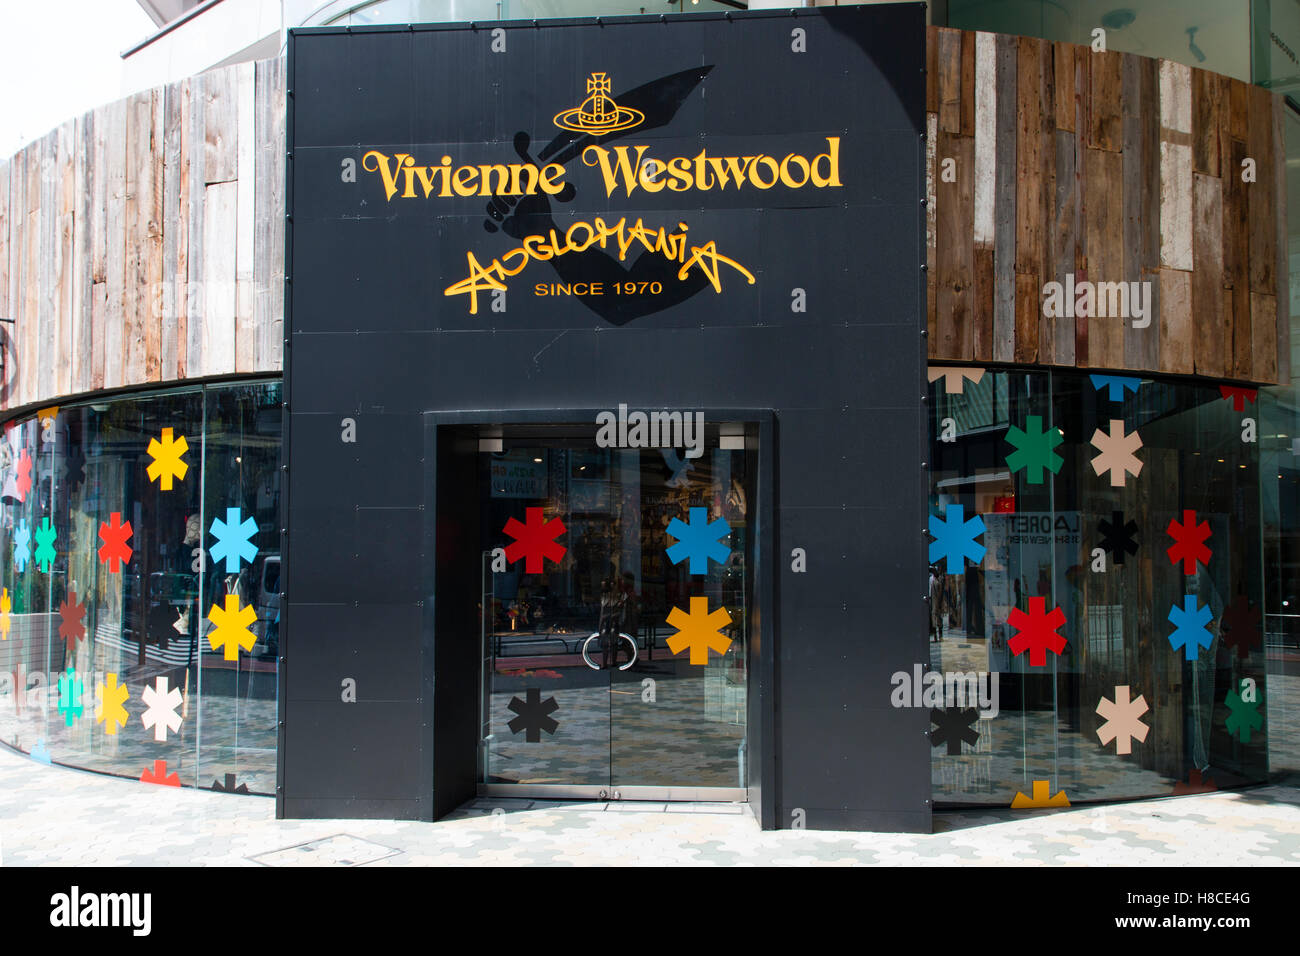 Giappone, Tokyo Harajuku. Vivienne Westwood Anglomania store. Entrata al negozio con il logo e il nome di cui sopra. La finestra di visualizzazione colorata di fiocchi di neve. Foto Stock